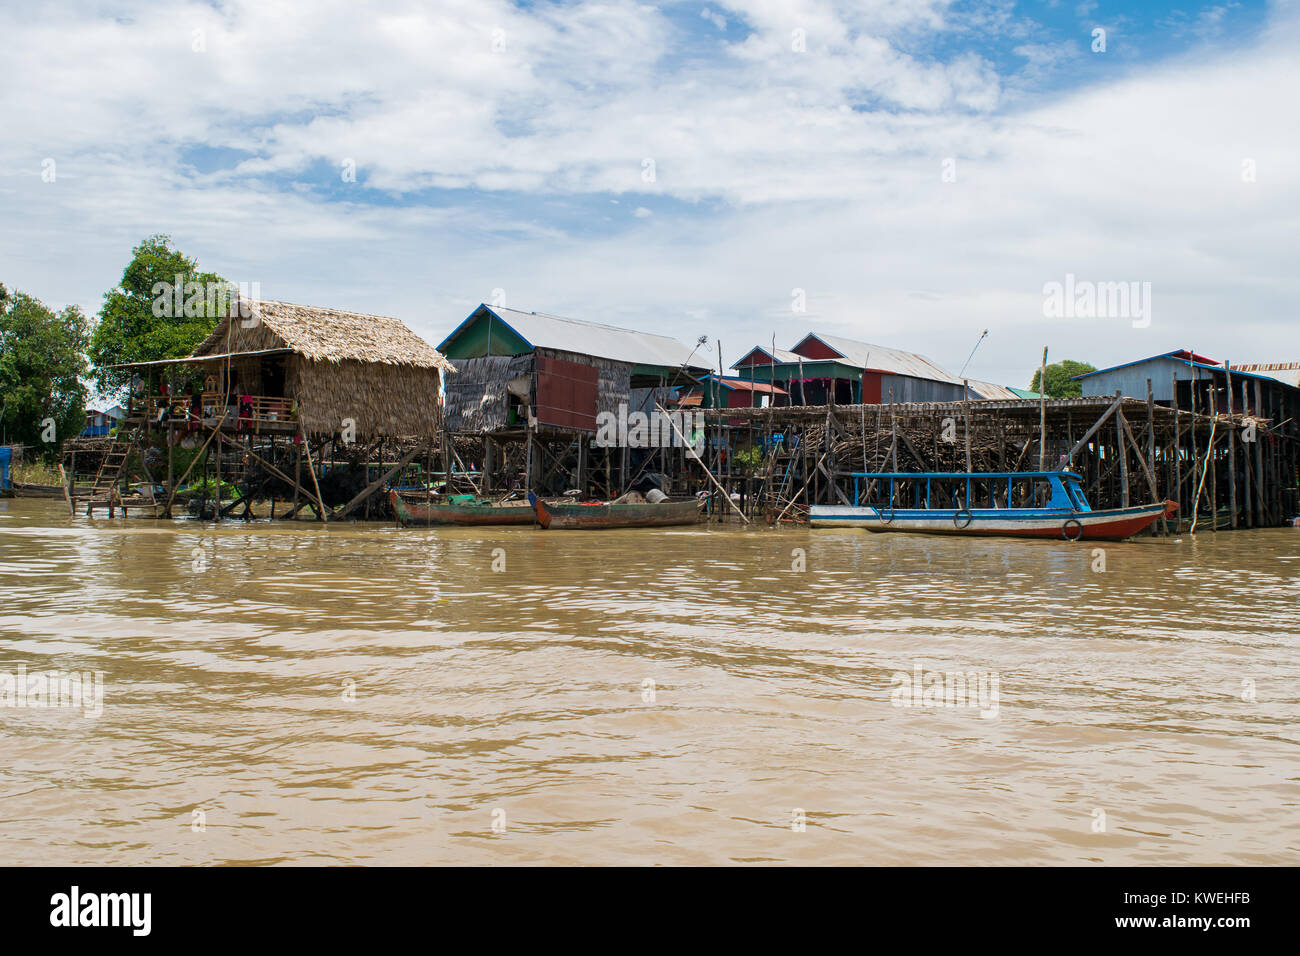 Bois et métal noyé inondé de règlement village sur pilotis, Kampong Phluk village flottant, Tonle Sap Lake, Siem Reap, Cambodge, Asie du sud-est Banque D'Images